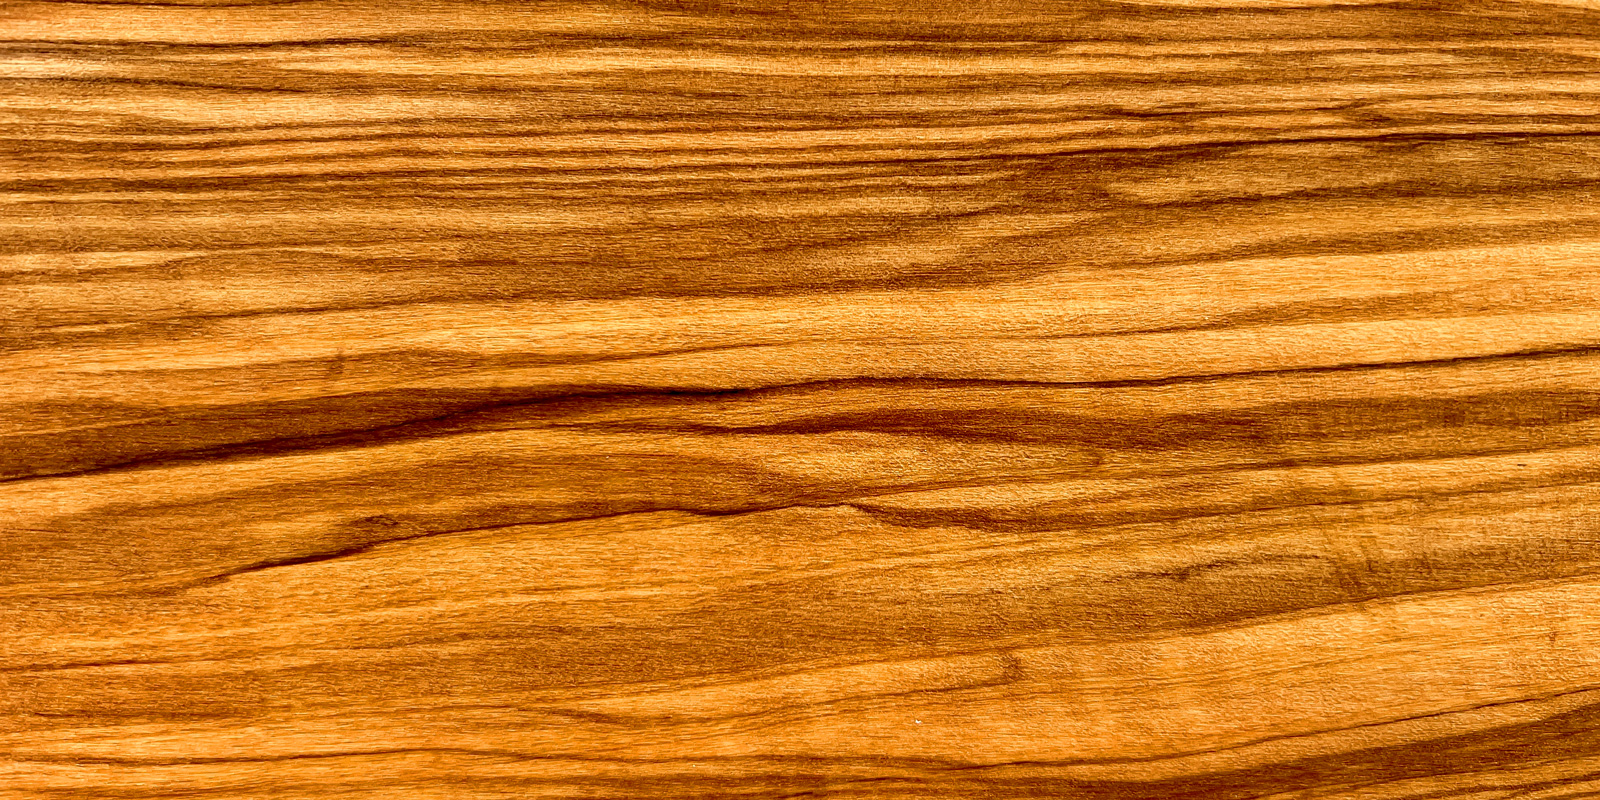 Produk kayu zaitun Barang-barang kayu zaitun berbutir indah yang menghadirkan nuansa hangat pada meja.